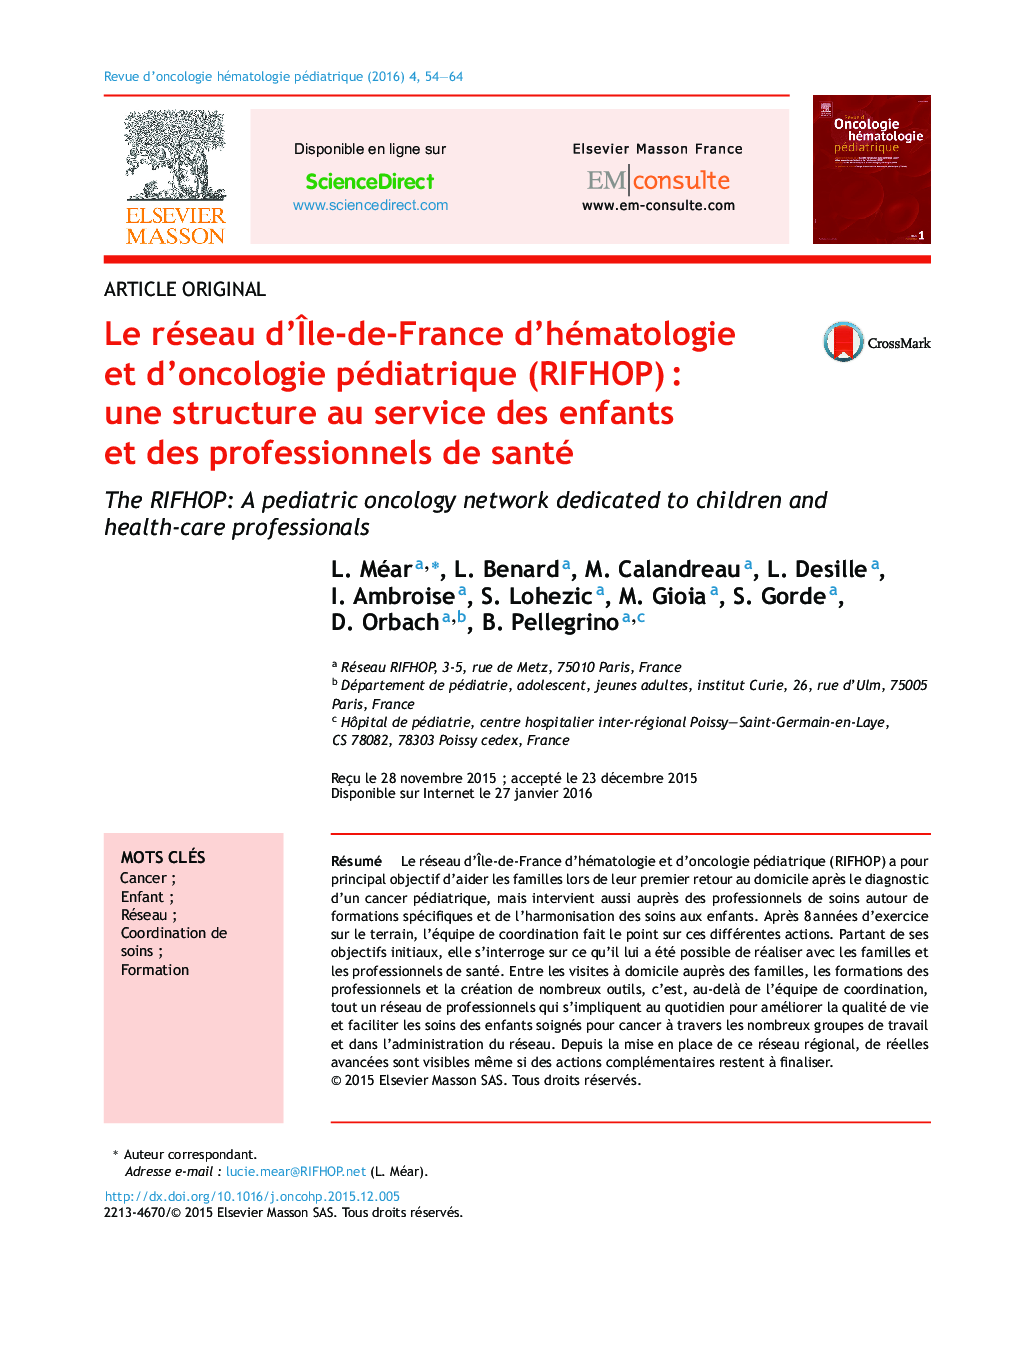 Le réseau d'Ãle-de-France d'hématologie et d'oncologie pédiatrique (RIFHOP)Â : une structure au service des enfants et des professionnels de santé